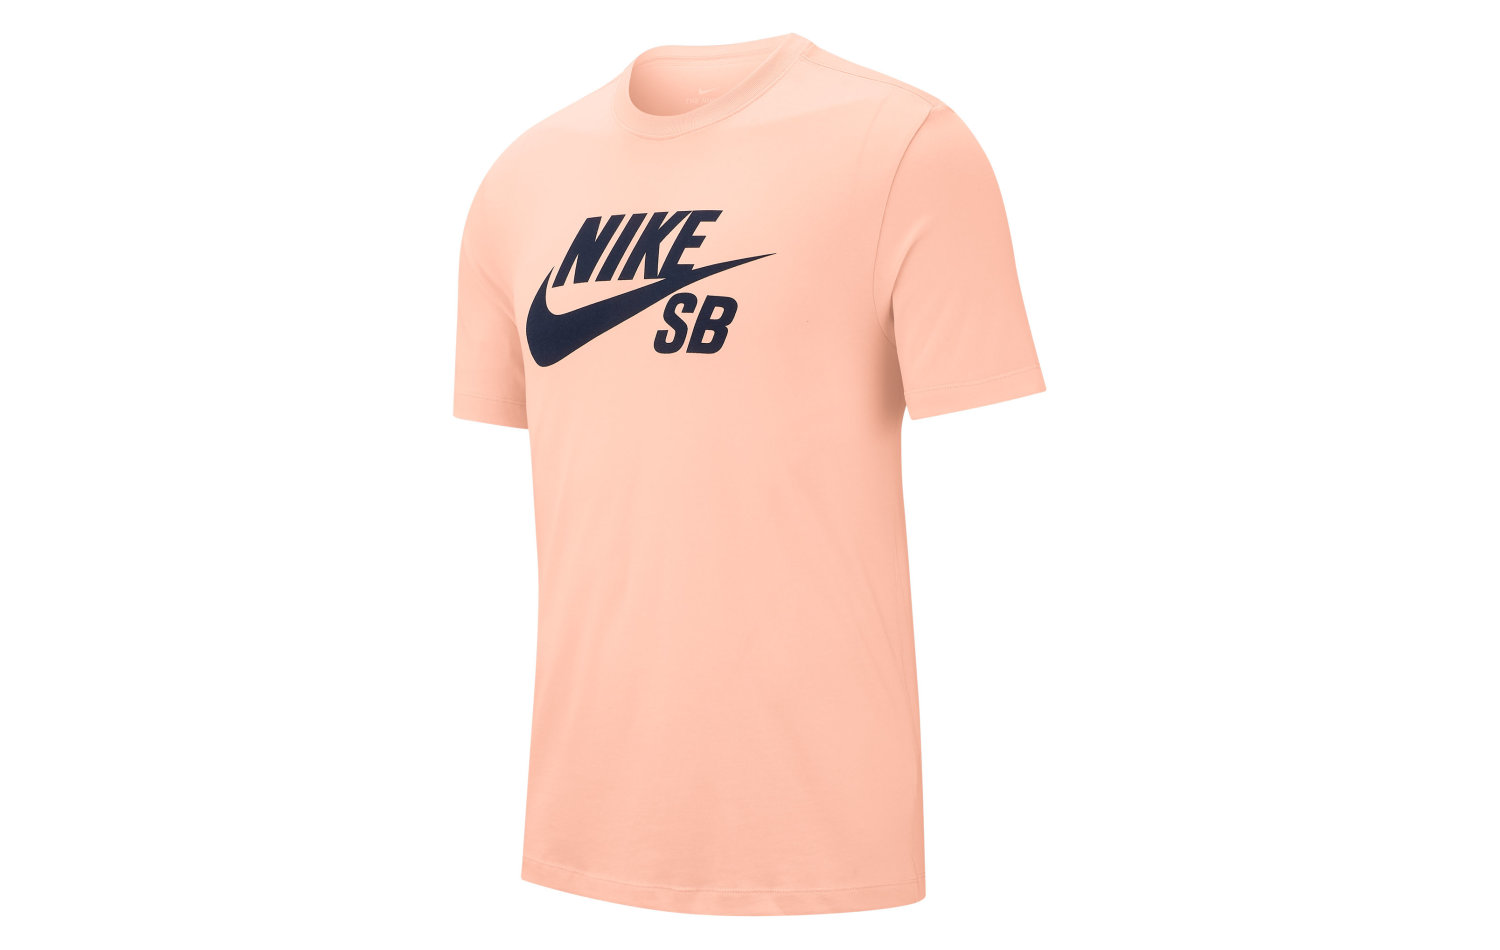 Nike SB Dri-fit S/S (AR4209-664)